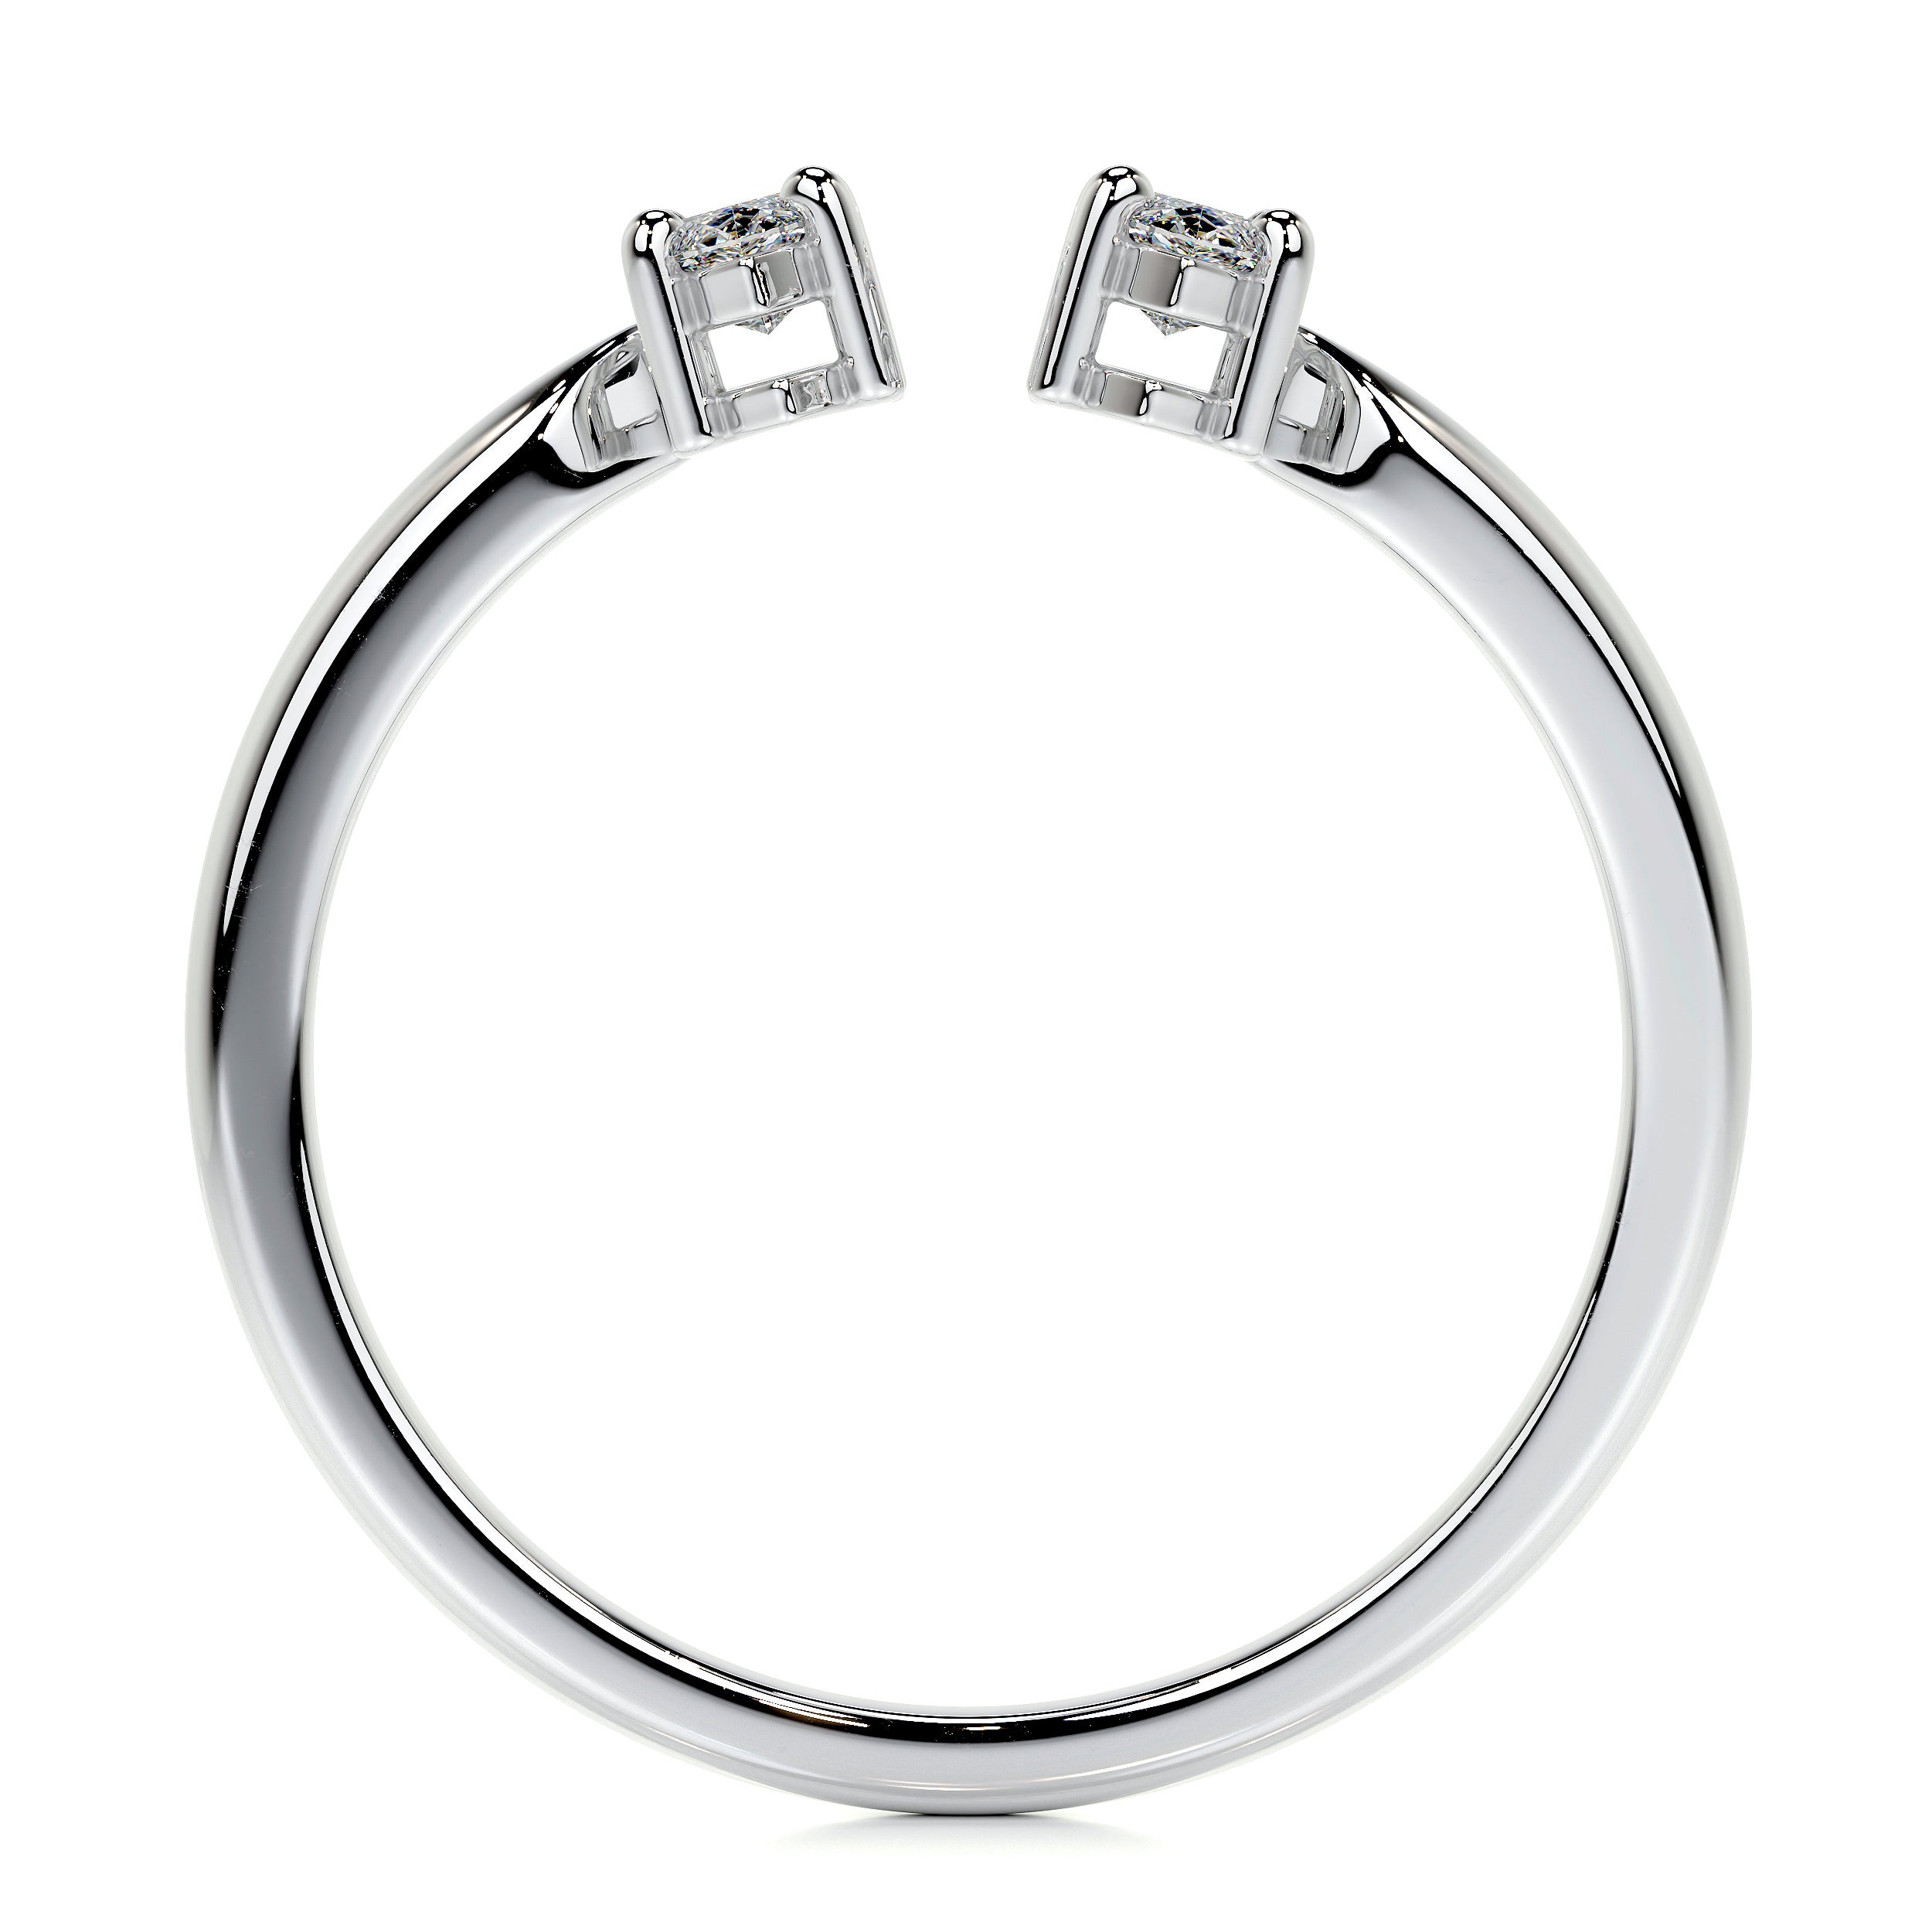 Celine Lab Grown Fashion Ring   (0.36 Carat) -14K White Gold